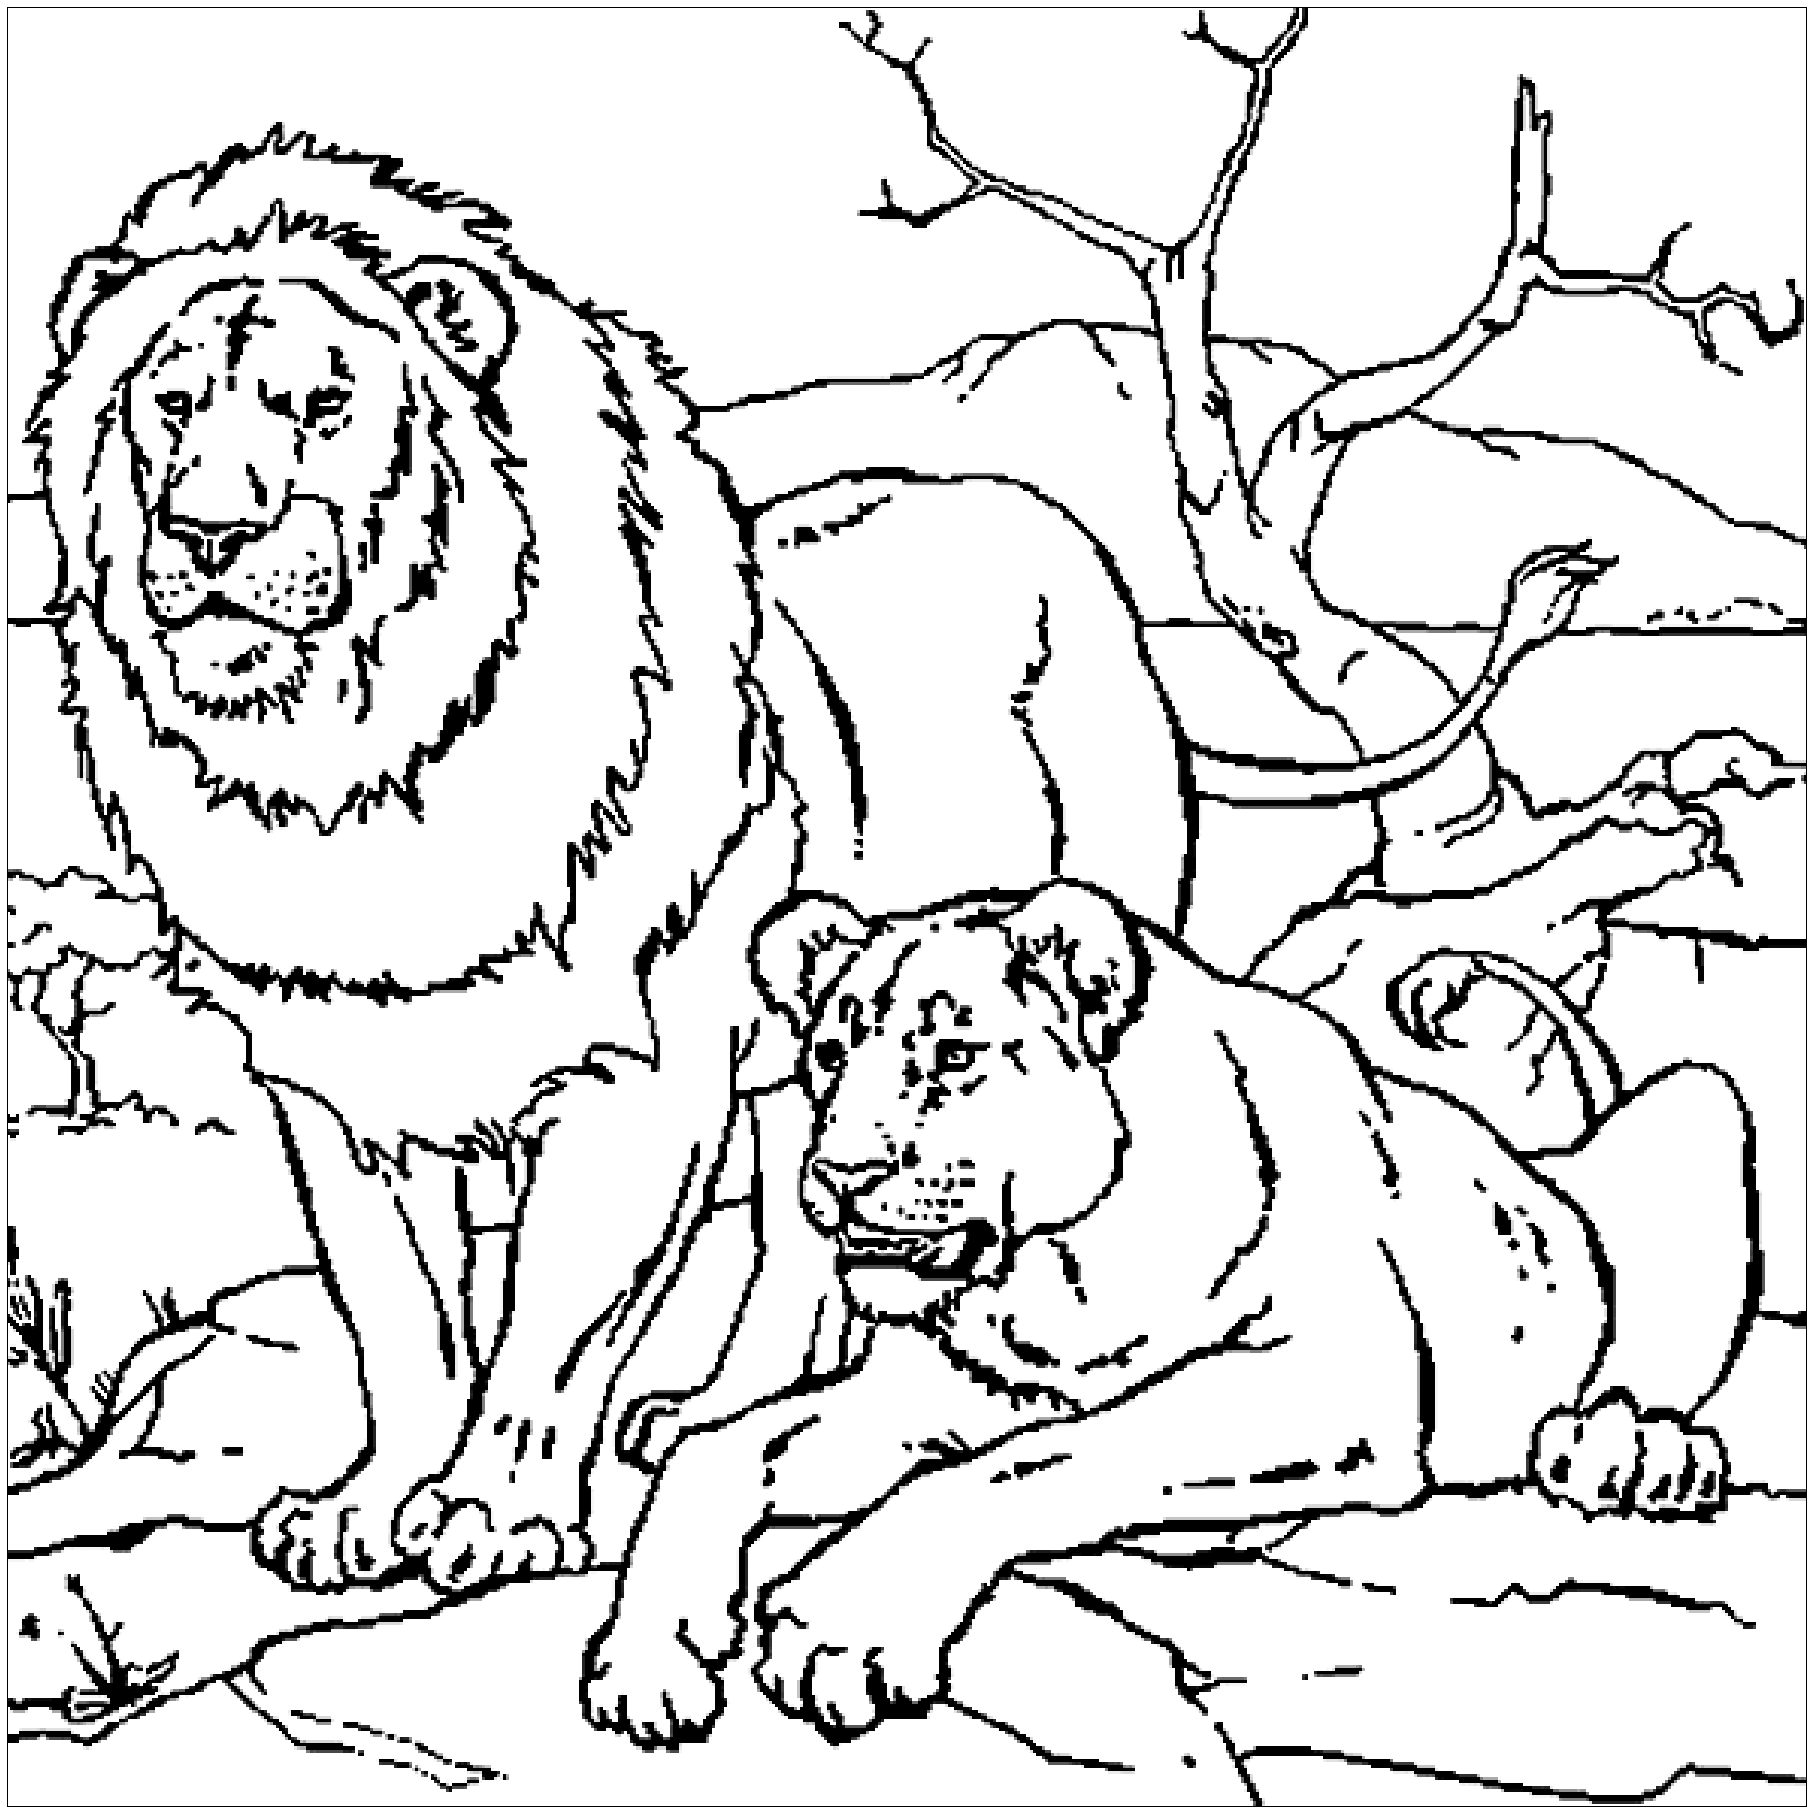 O Leão e a sua Leãone bask